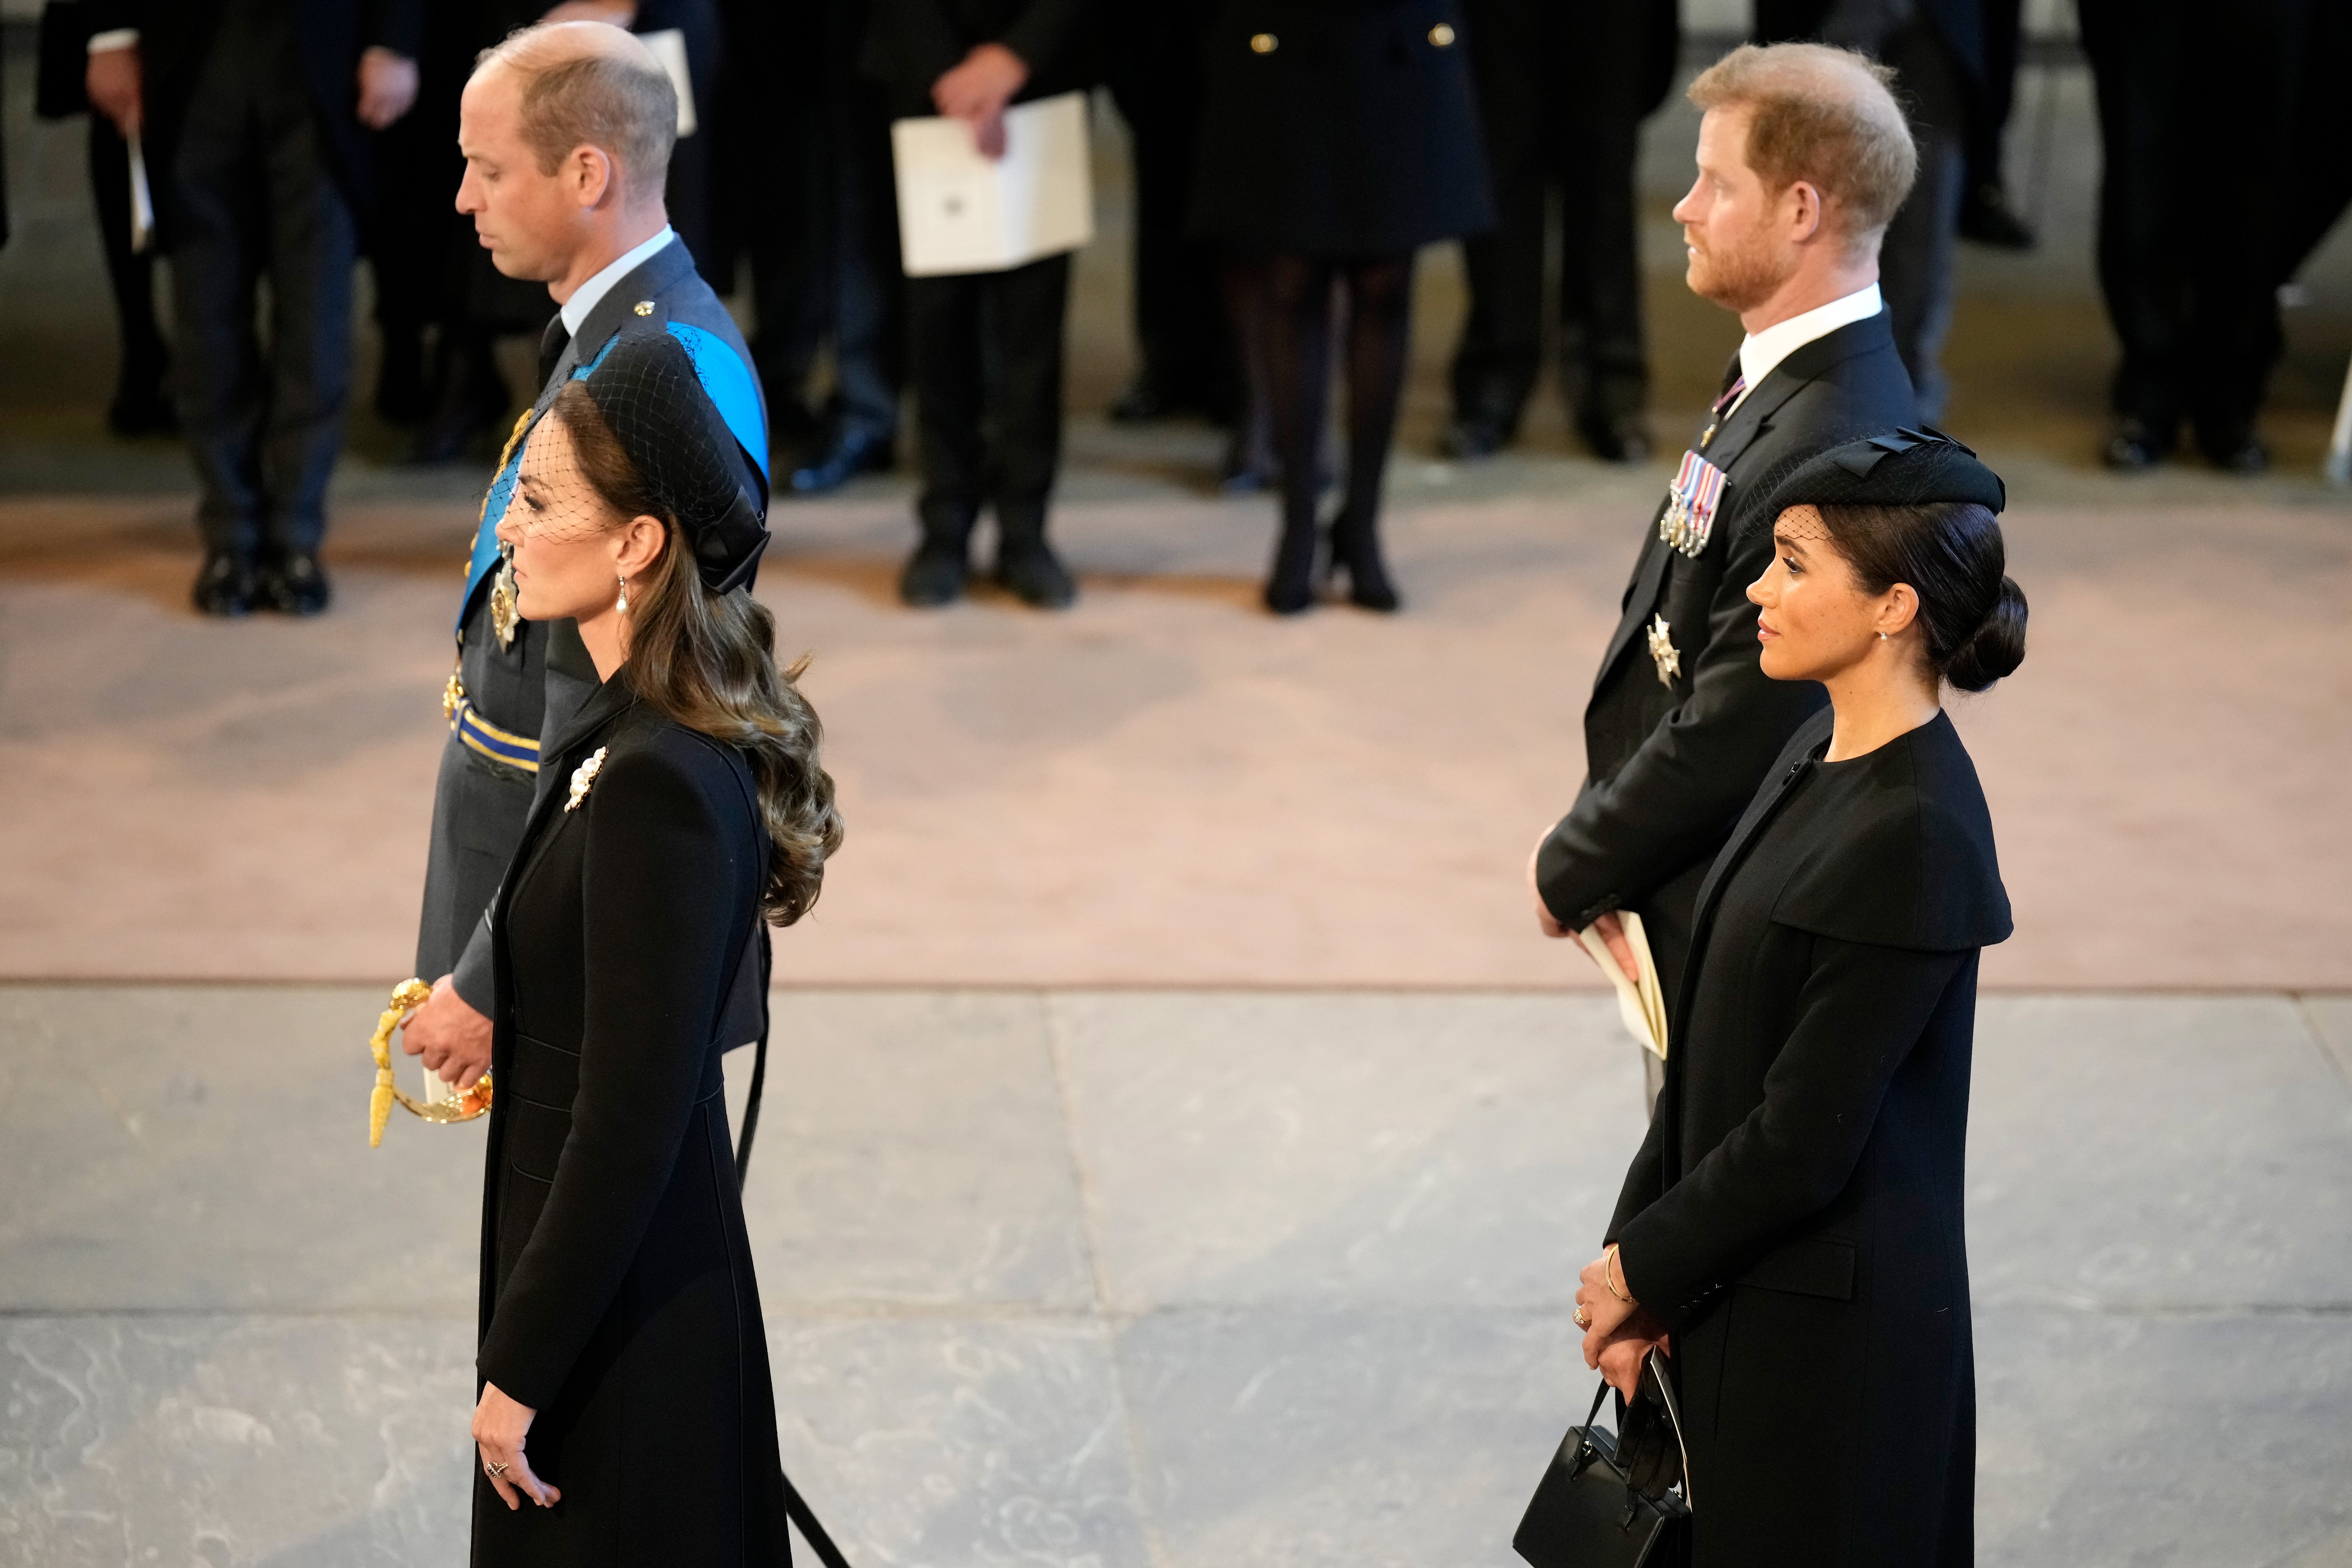 William y Kate, príncipes de Gales, Meghan y Harry, duques de Sussex, presentan sus respetos en el Palacio de Westminster después de la procesión de la reina Elizabeth II el 14 de septiembre de 2022 en Londres, Inglaterra | Foto: Getty Images